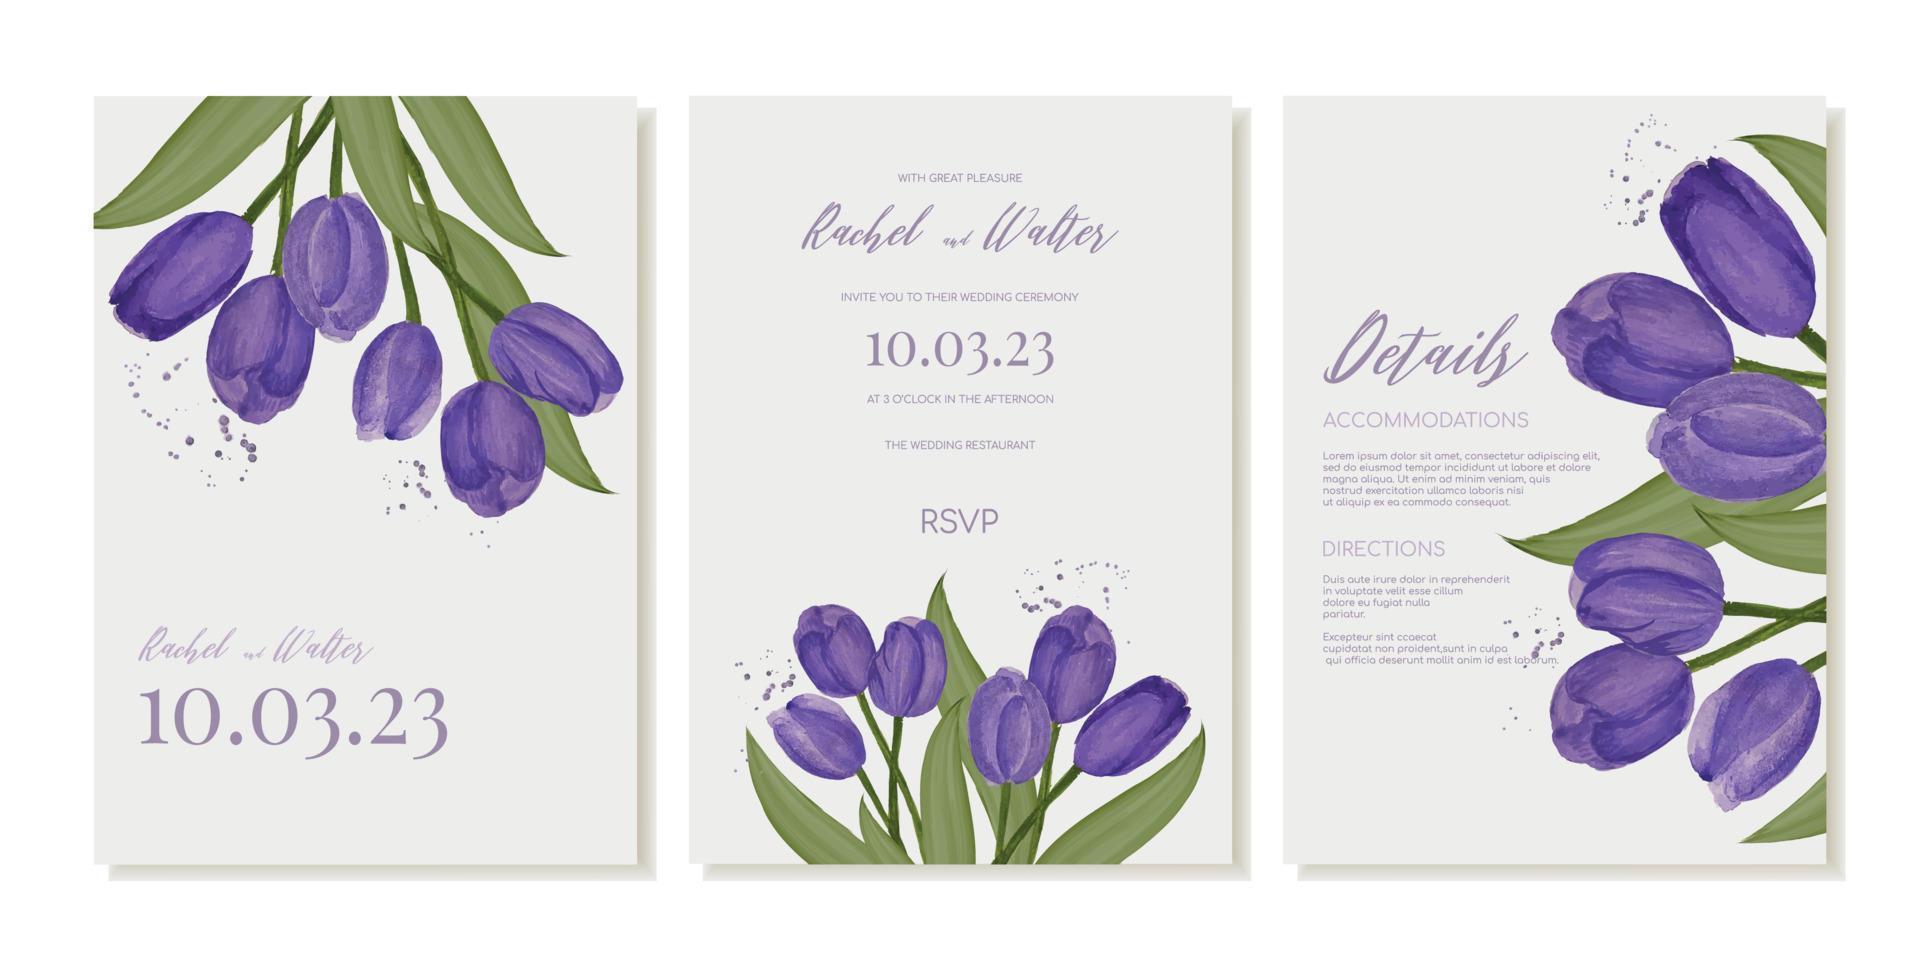 Hochzeit Einladung Vorlage mit Aquarell lila Tulpen. Vektor